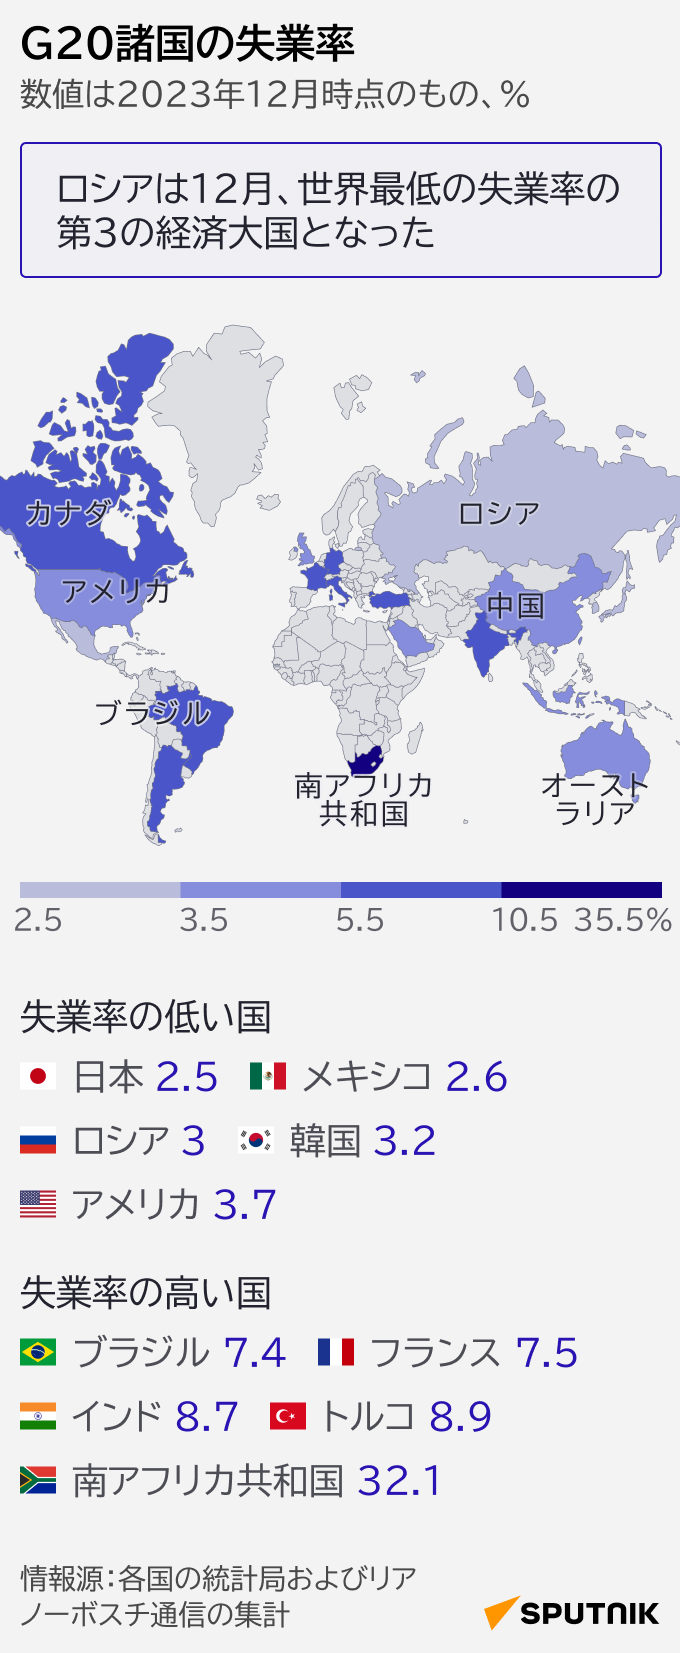 数字で見るG20諸国の失業率 - Sputnik 日本